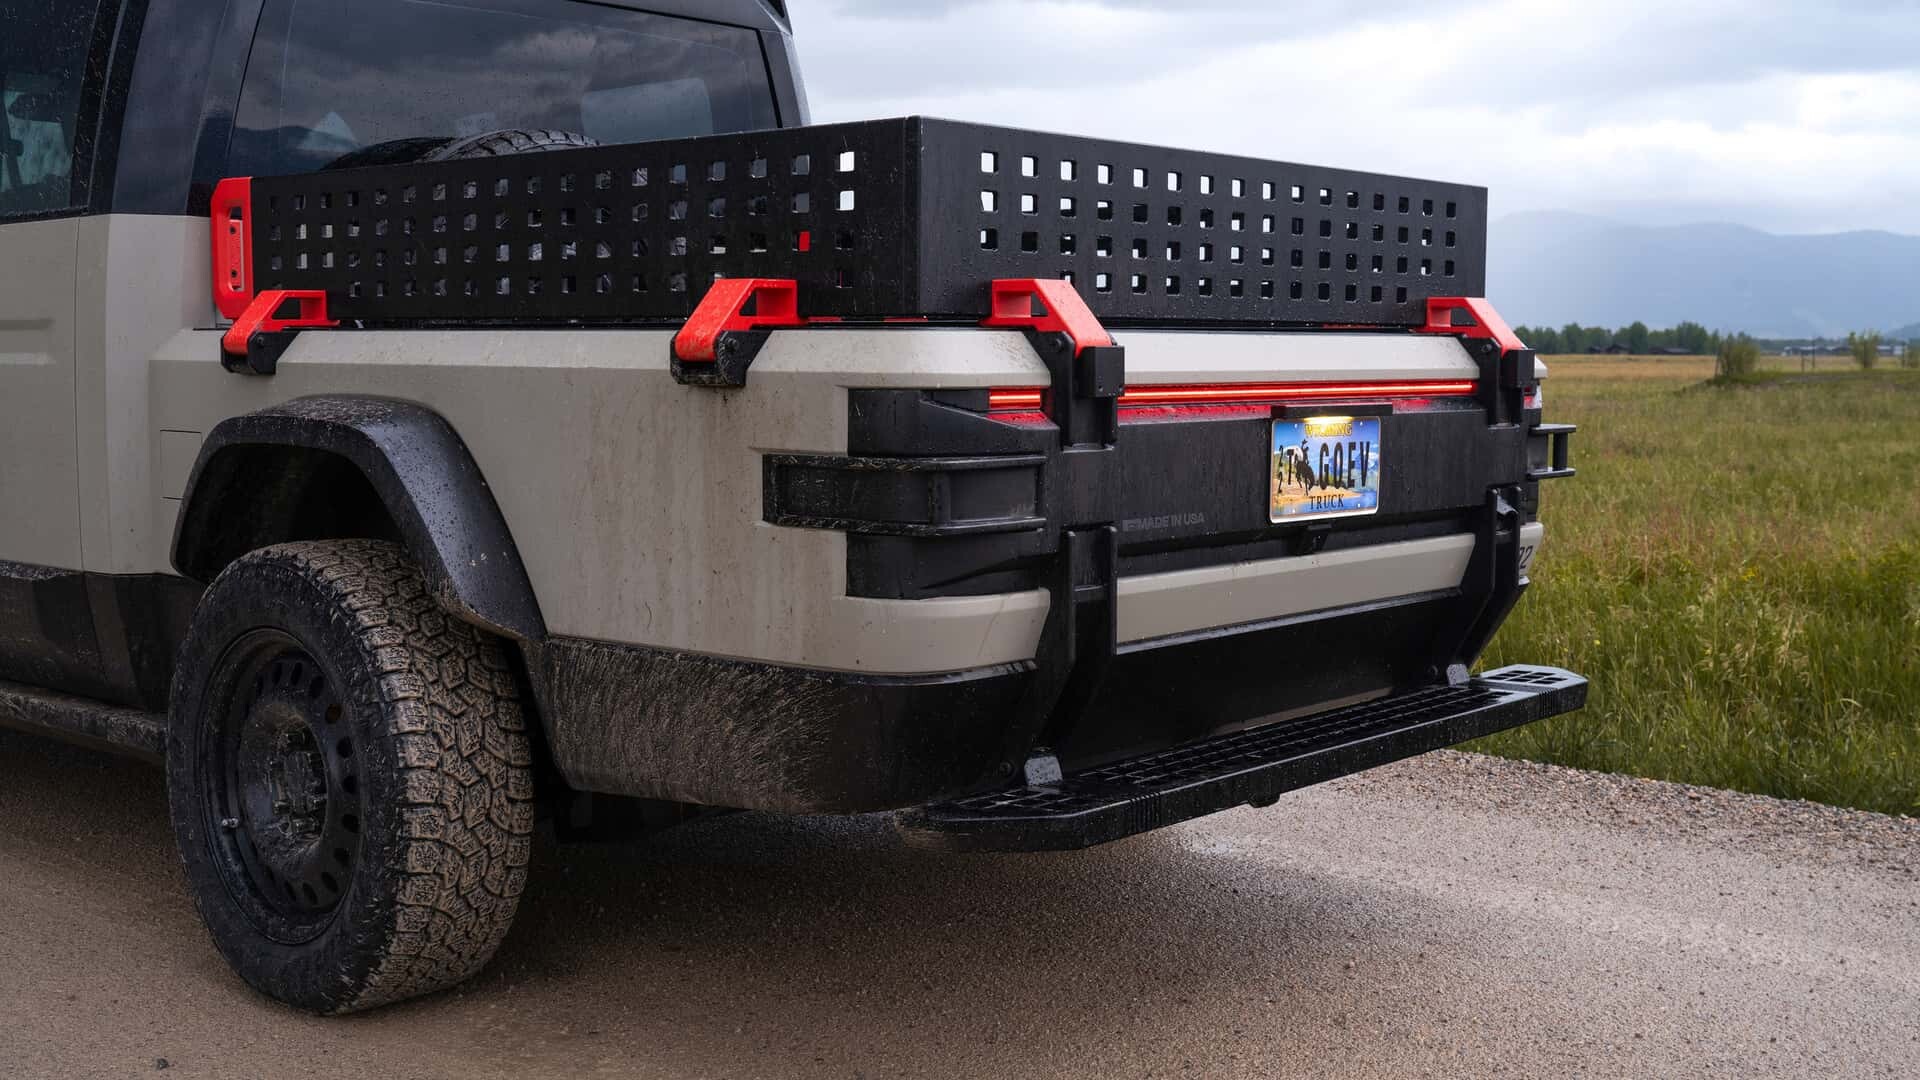 Nova Jeep® Gladiator, a inovadora pick-up entre tradição e futuro, Jeep